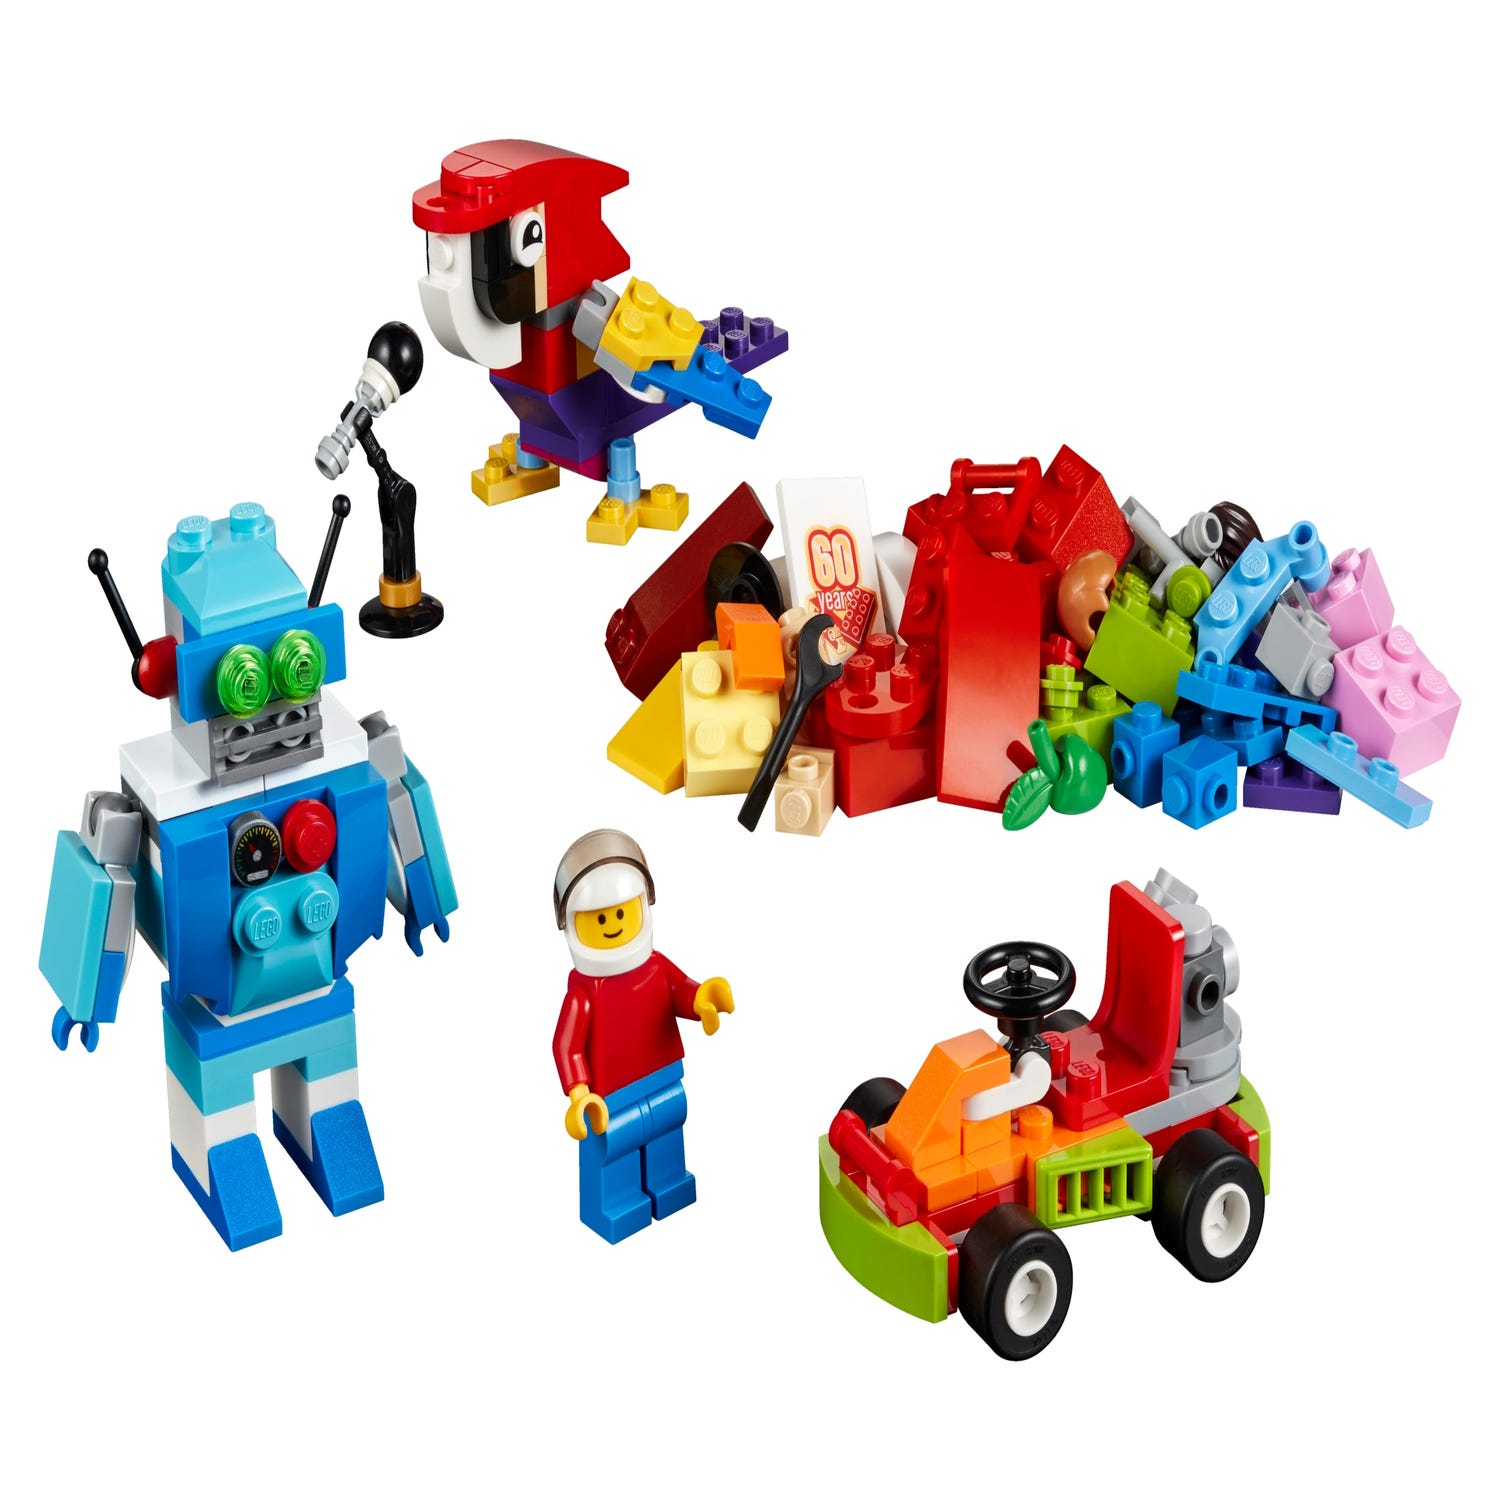 aankomst maandelijks leiderschap Fun Future 10402 | Classic | Buy online at the Official LEGO® Shop US